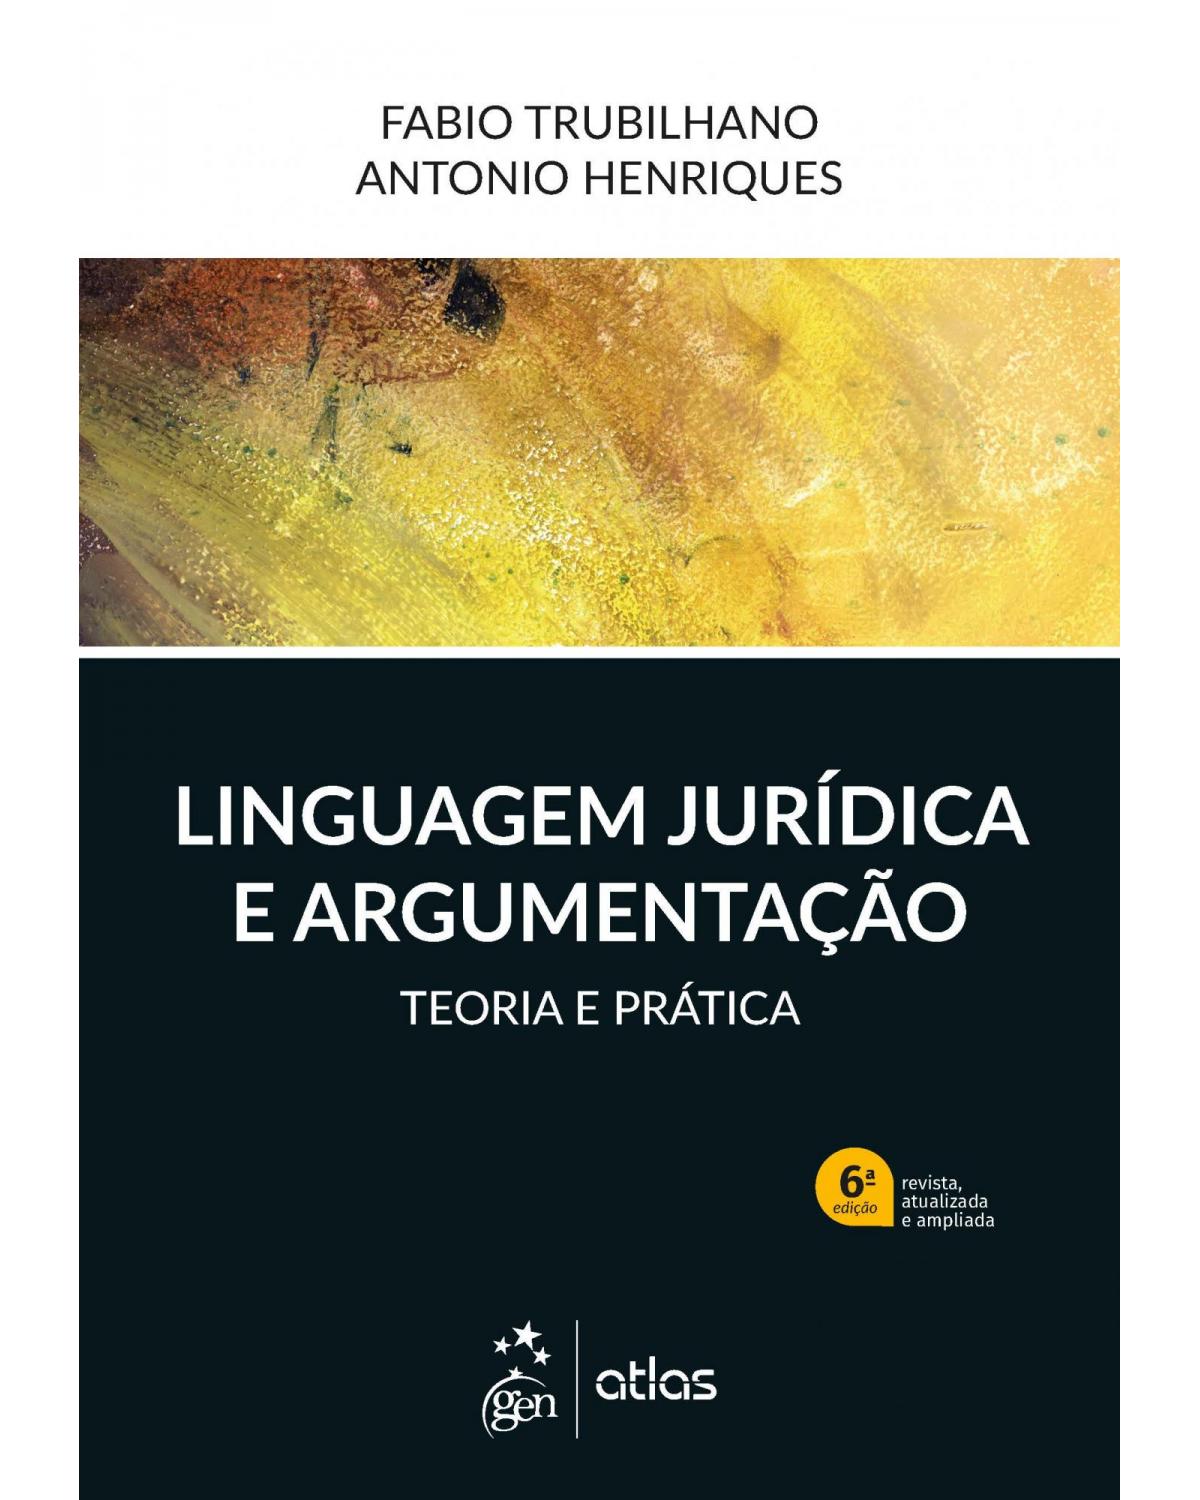 Linguagem Jurídica e Argumentação - Teoria e Prática - 6ª Edição | 2019